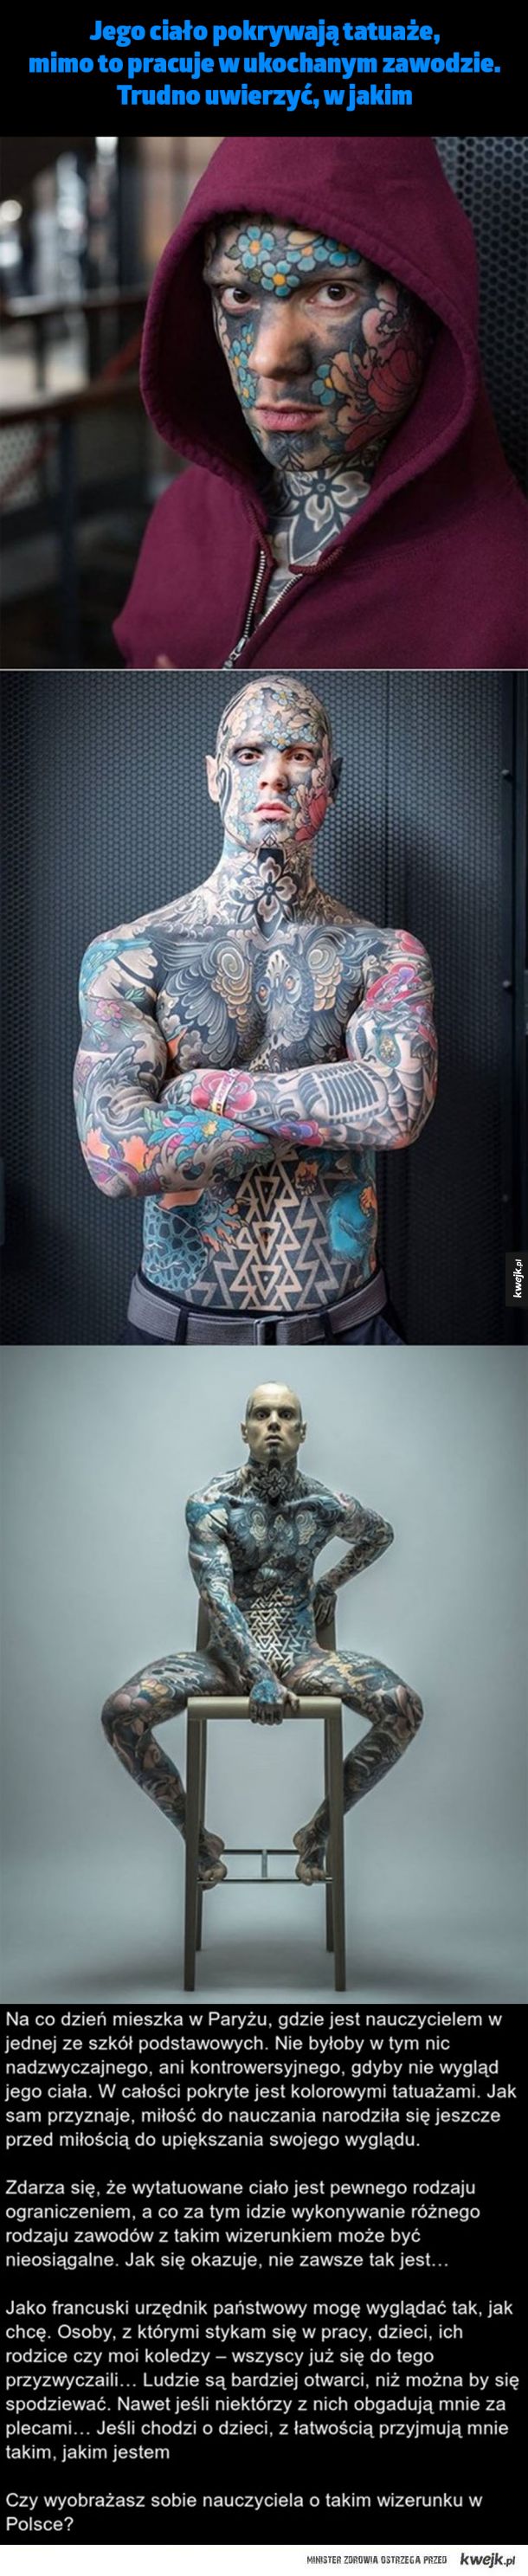 Jego ciało pokrywają tatuaże